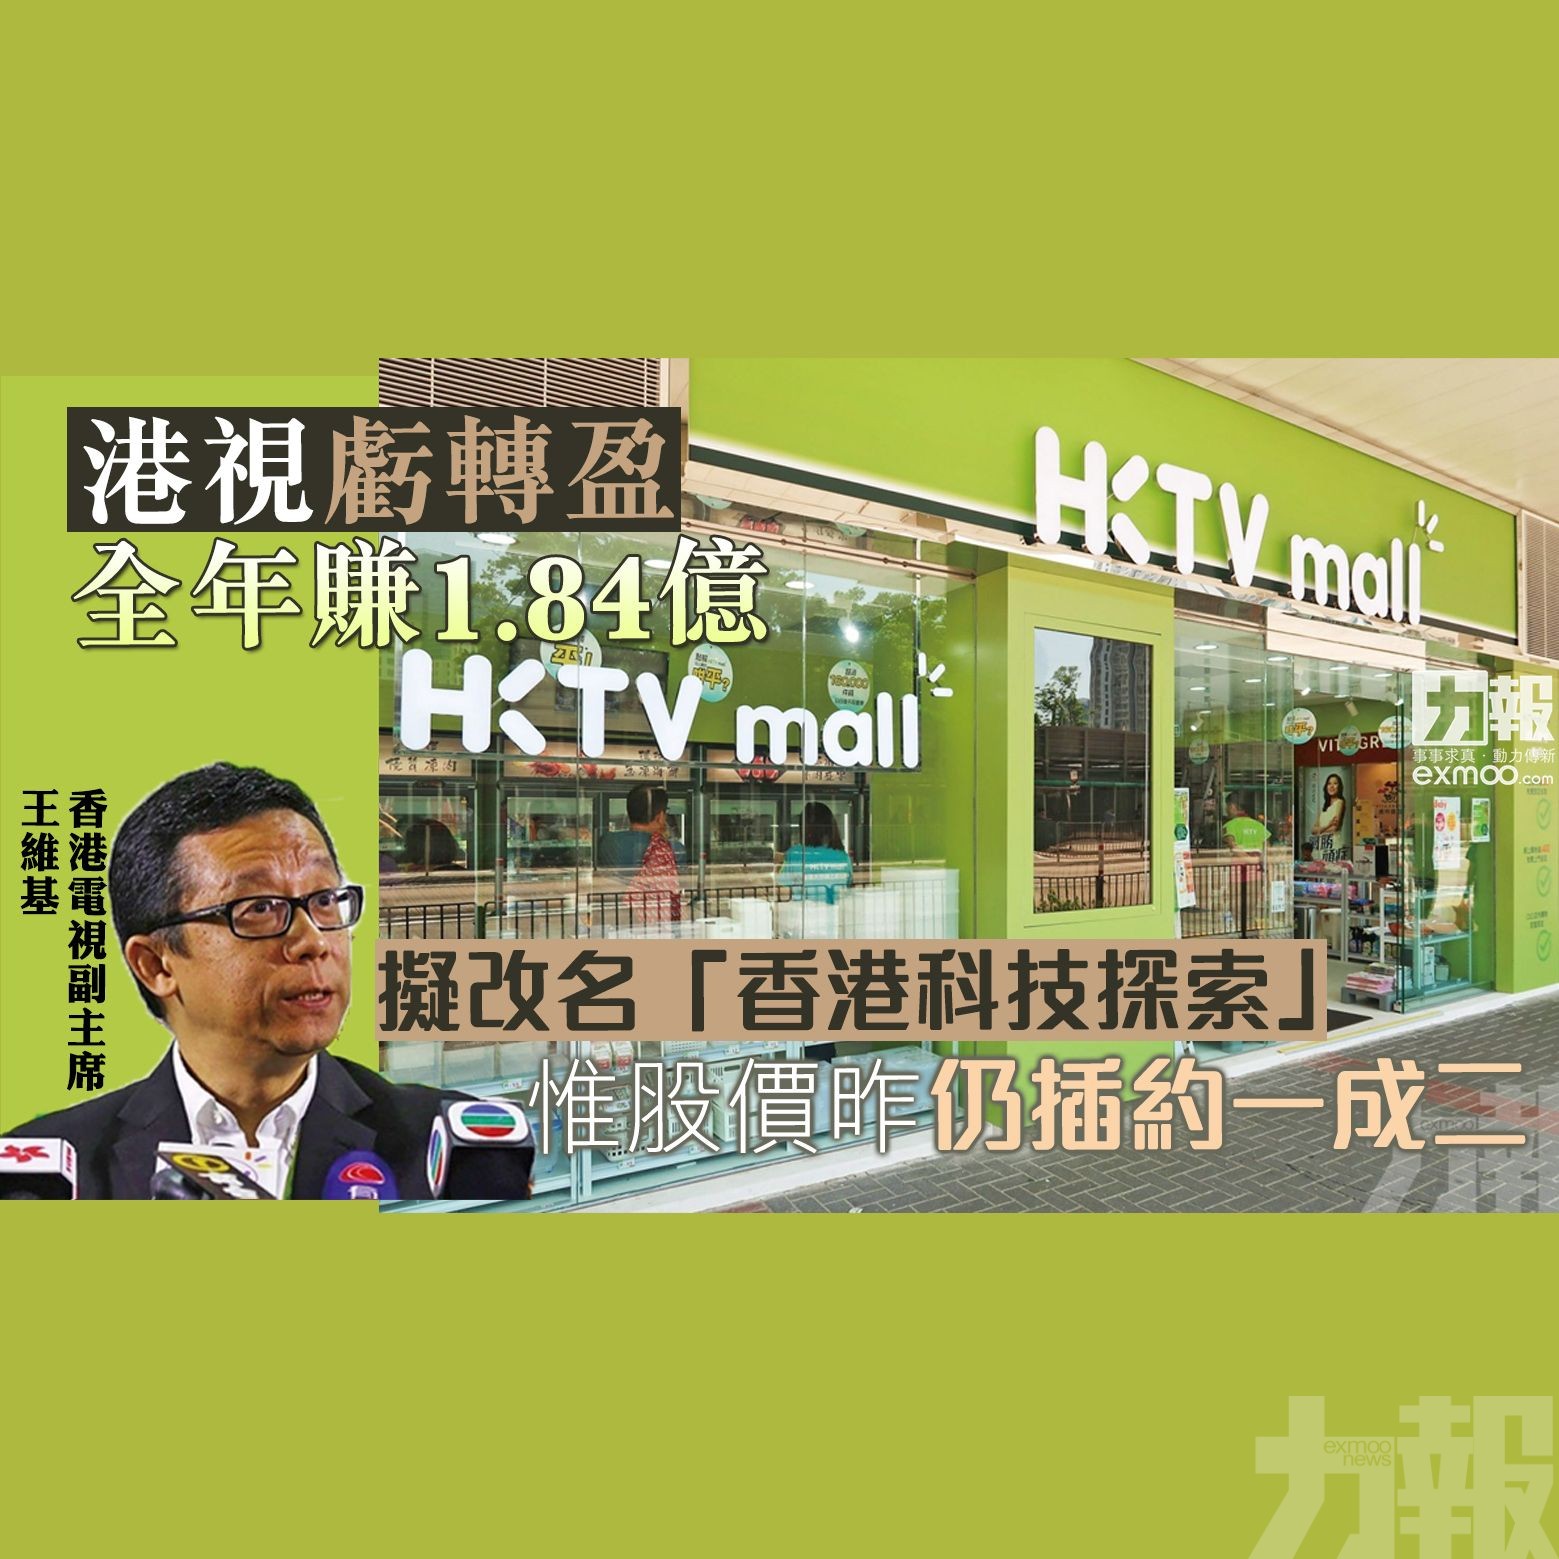 擬改名「香港科技探索」 惟股價昨仍插約一成二